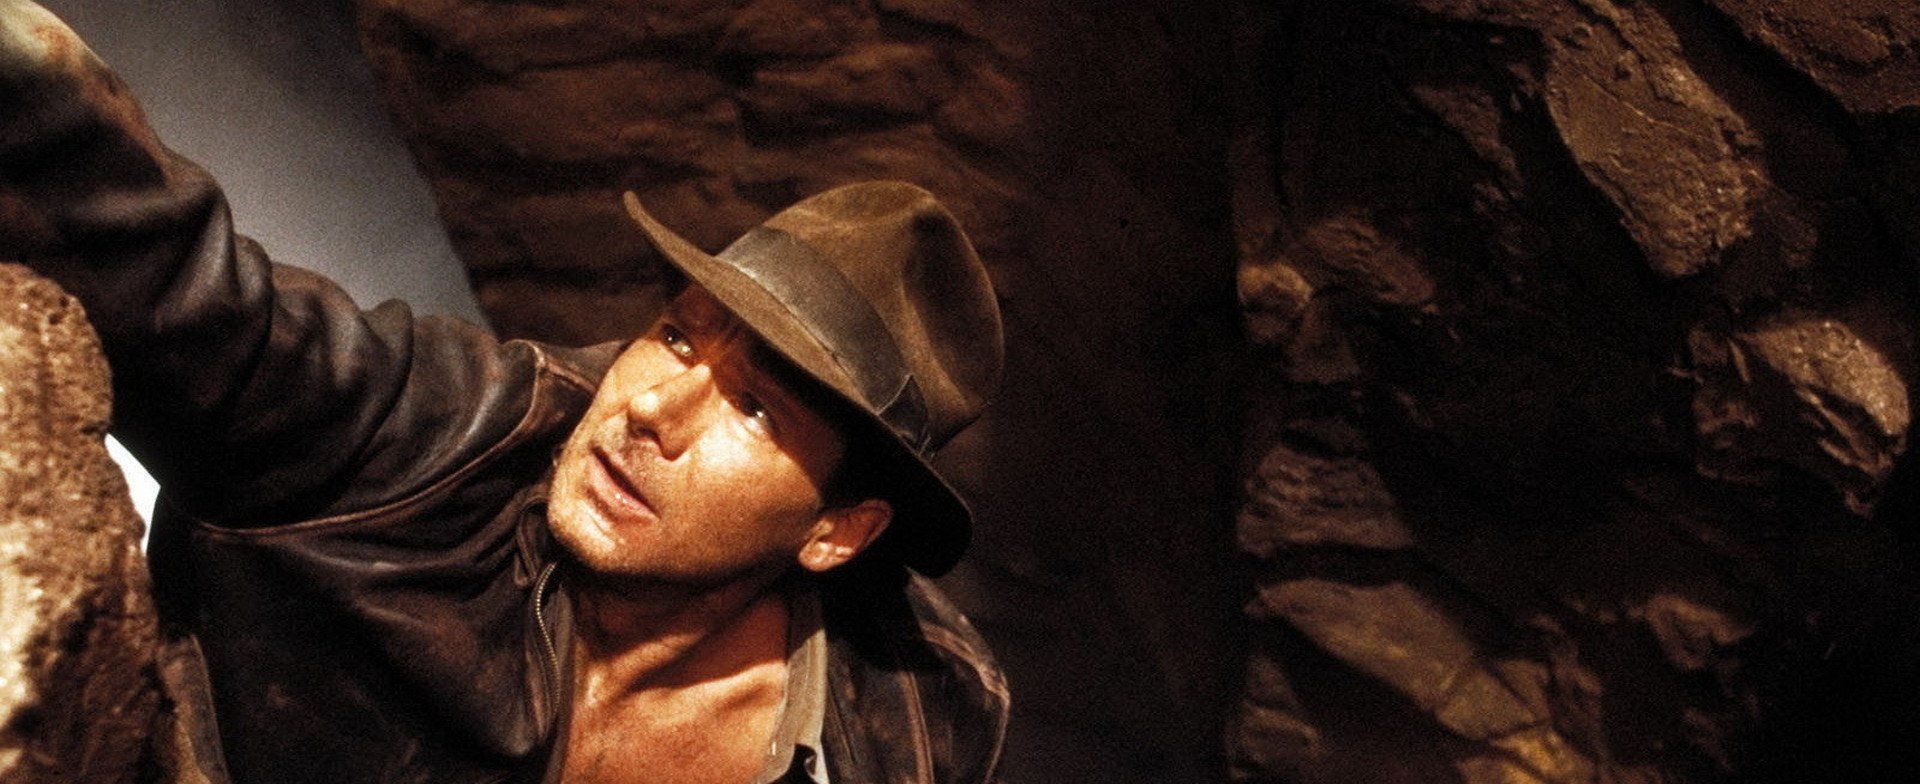 Indiana Jones et la Dernière Croisade streaming gratuit